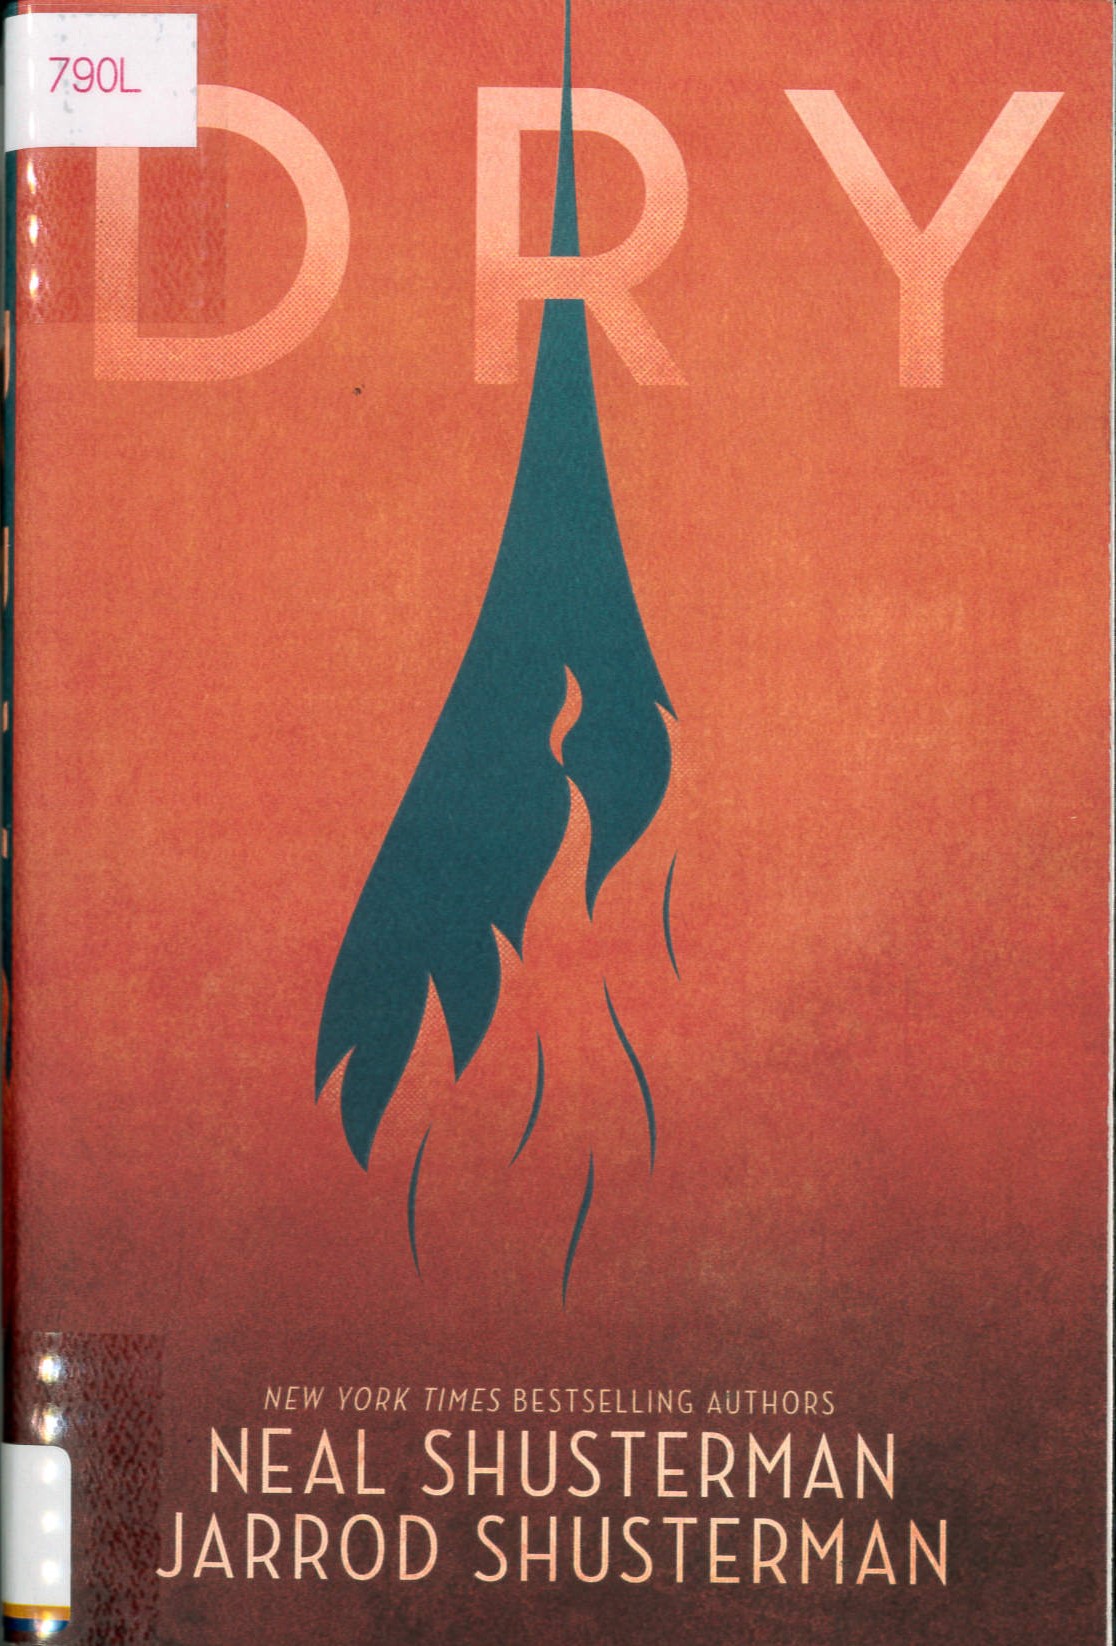 Dry /